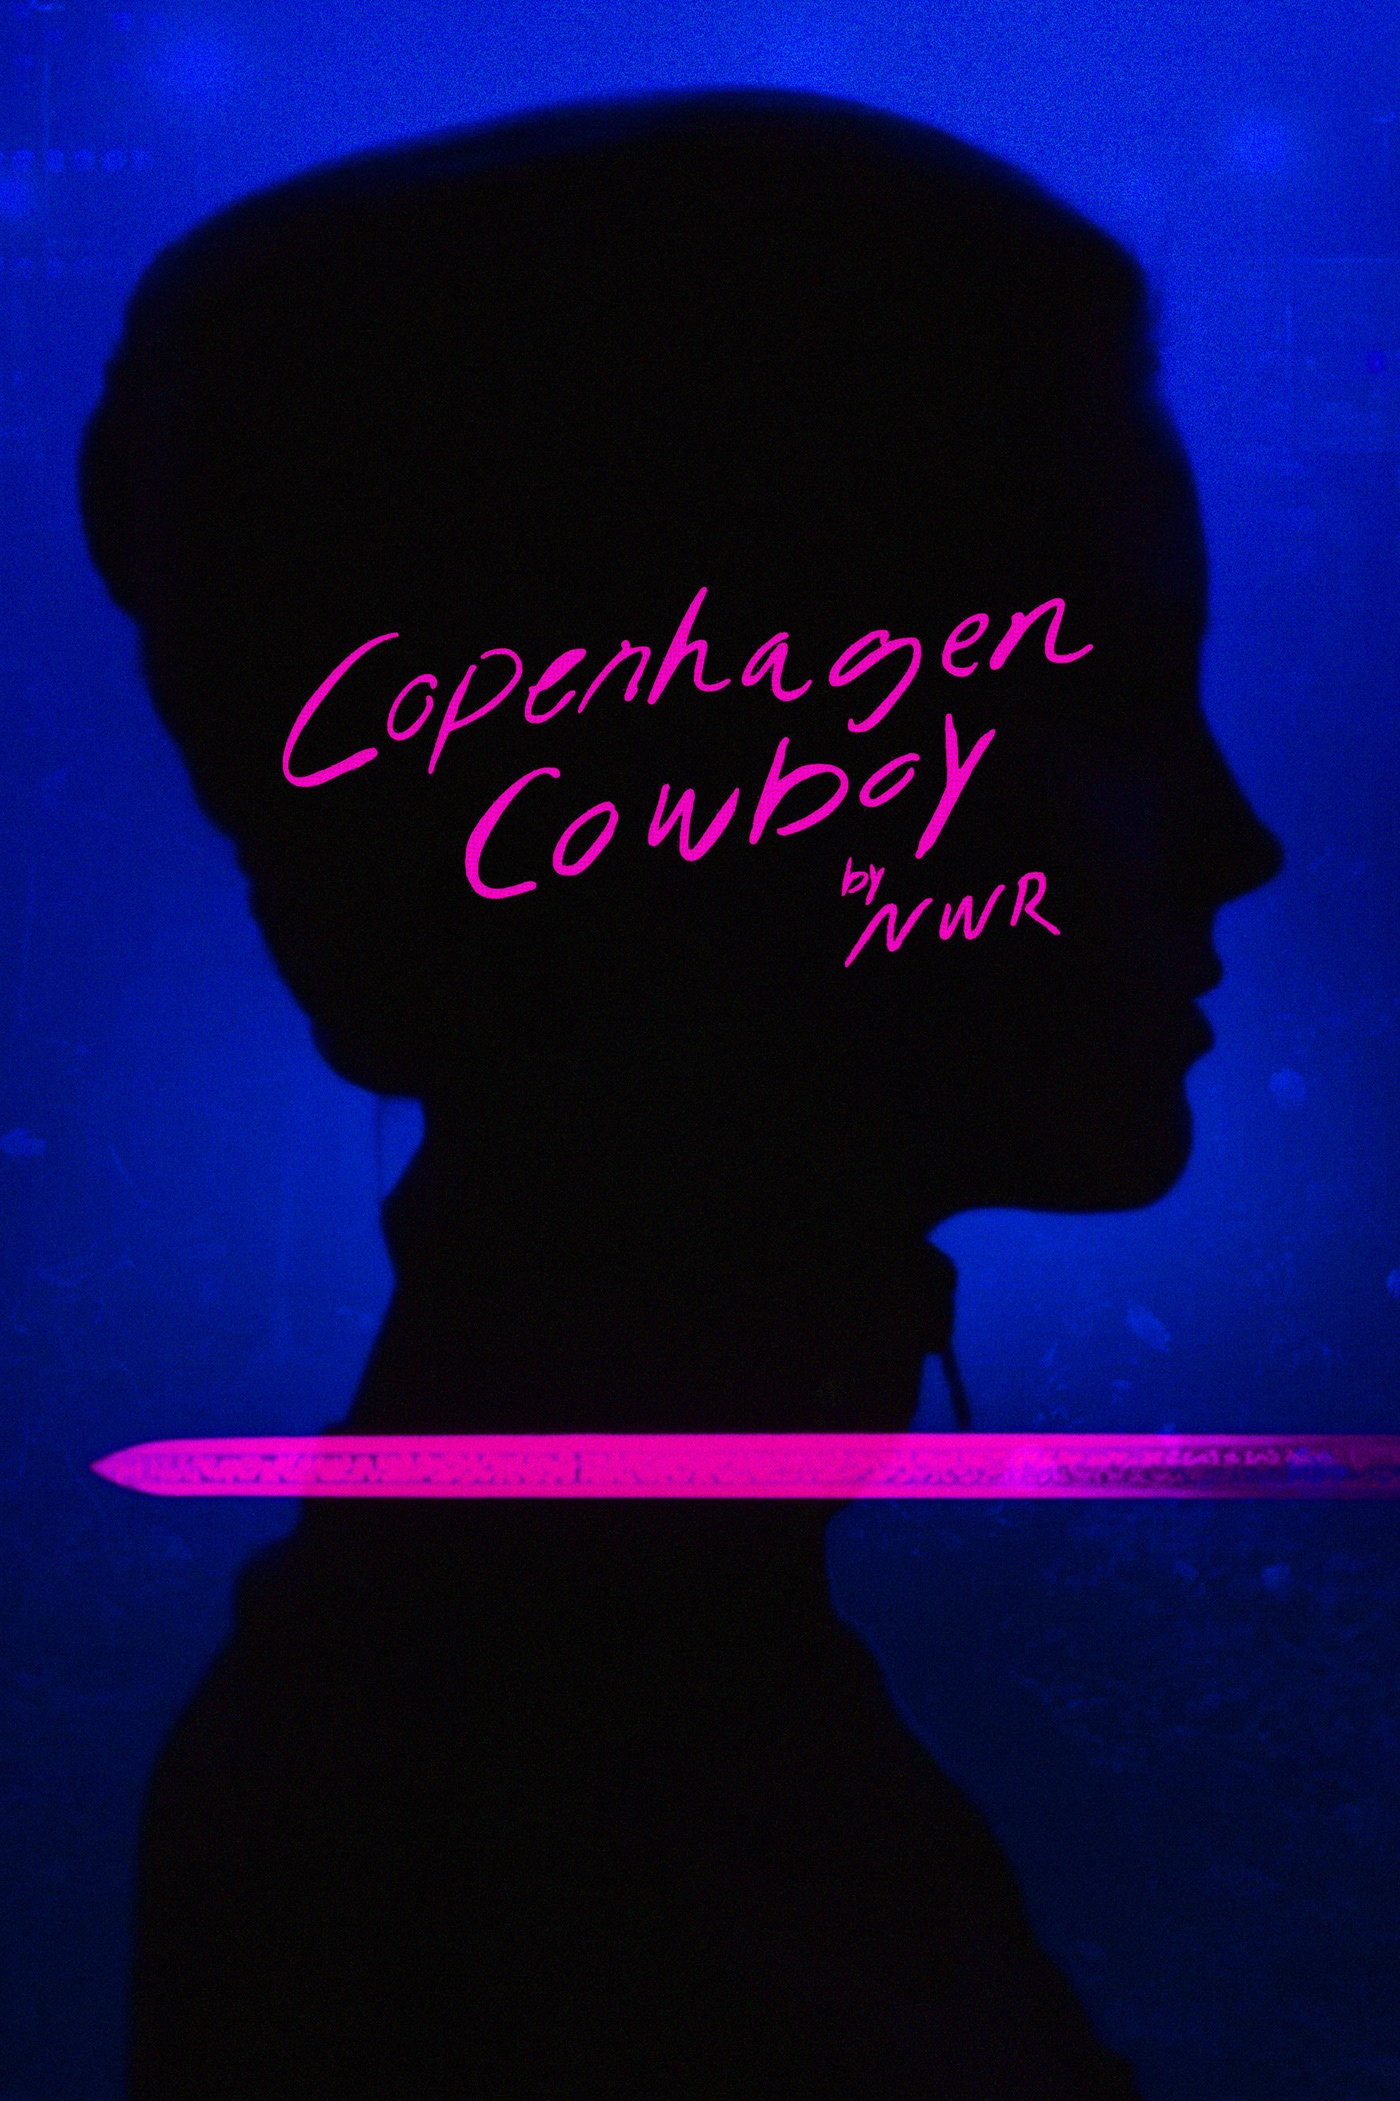 Nicolas Winding Refn's 'Copenhagen Cowboy'